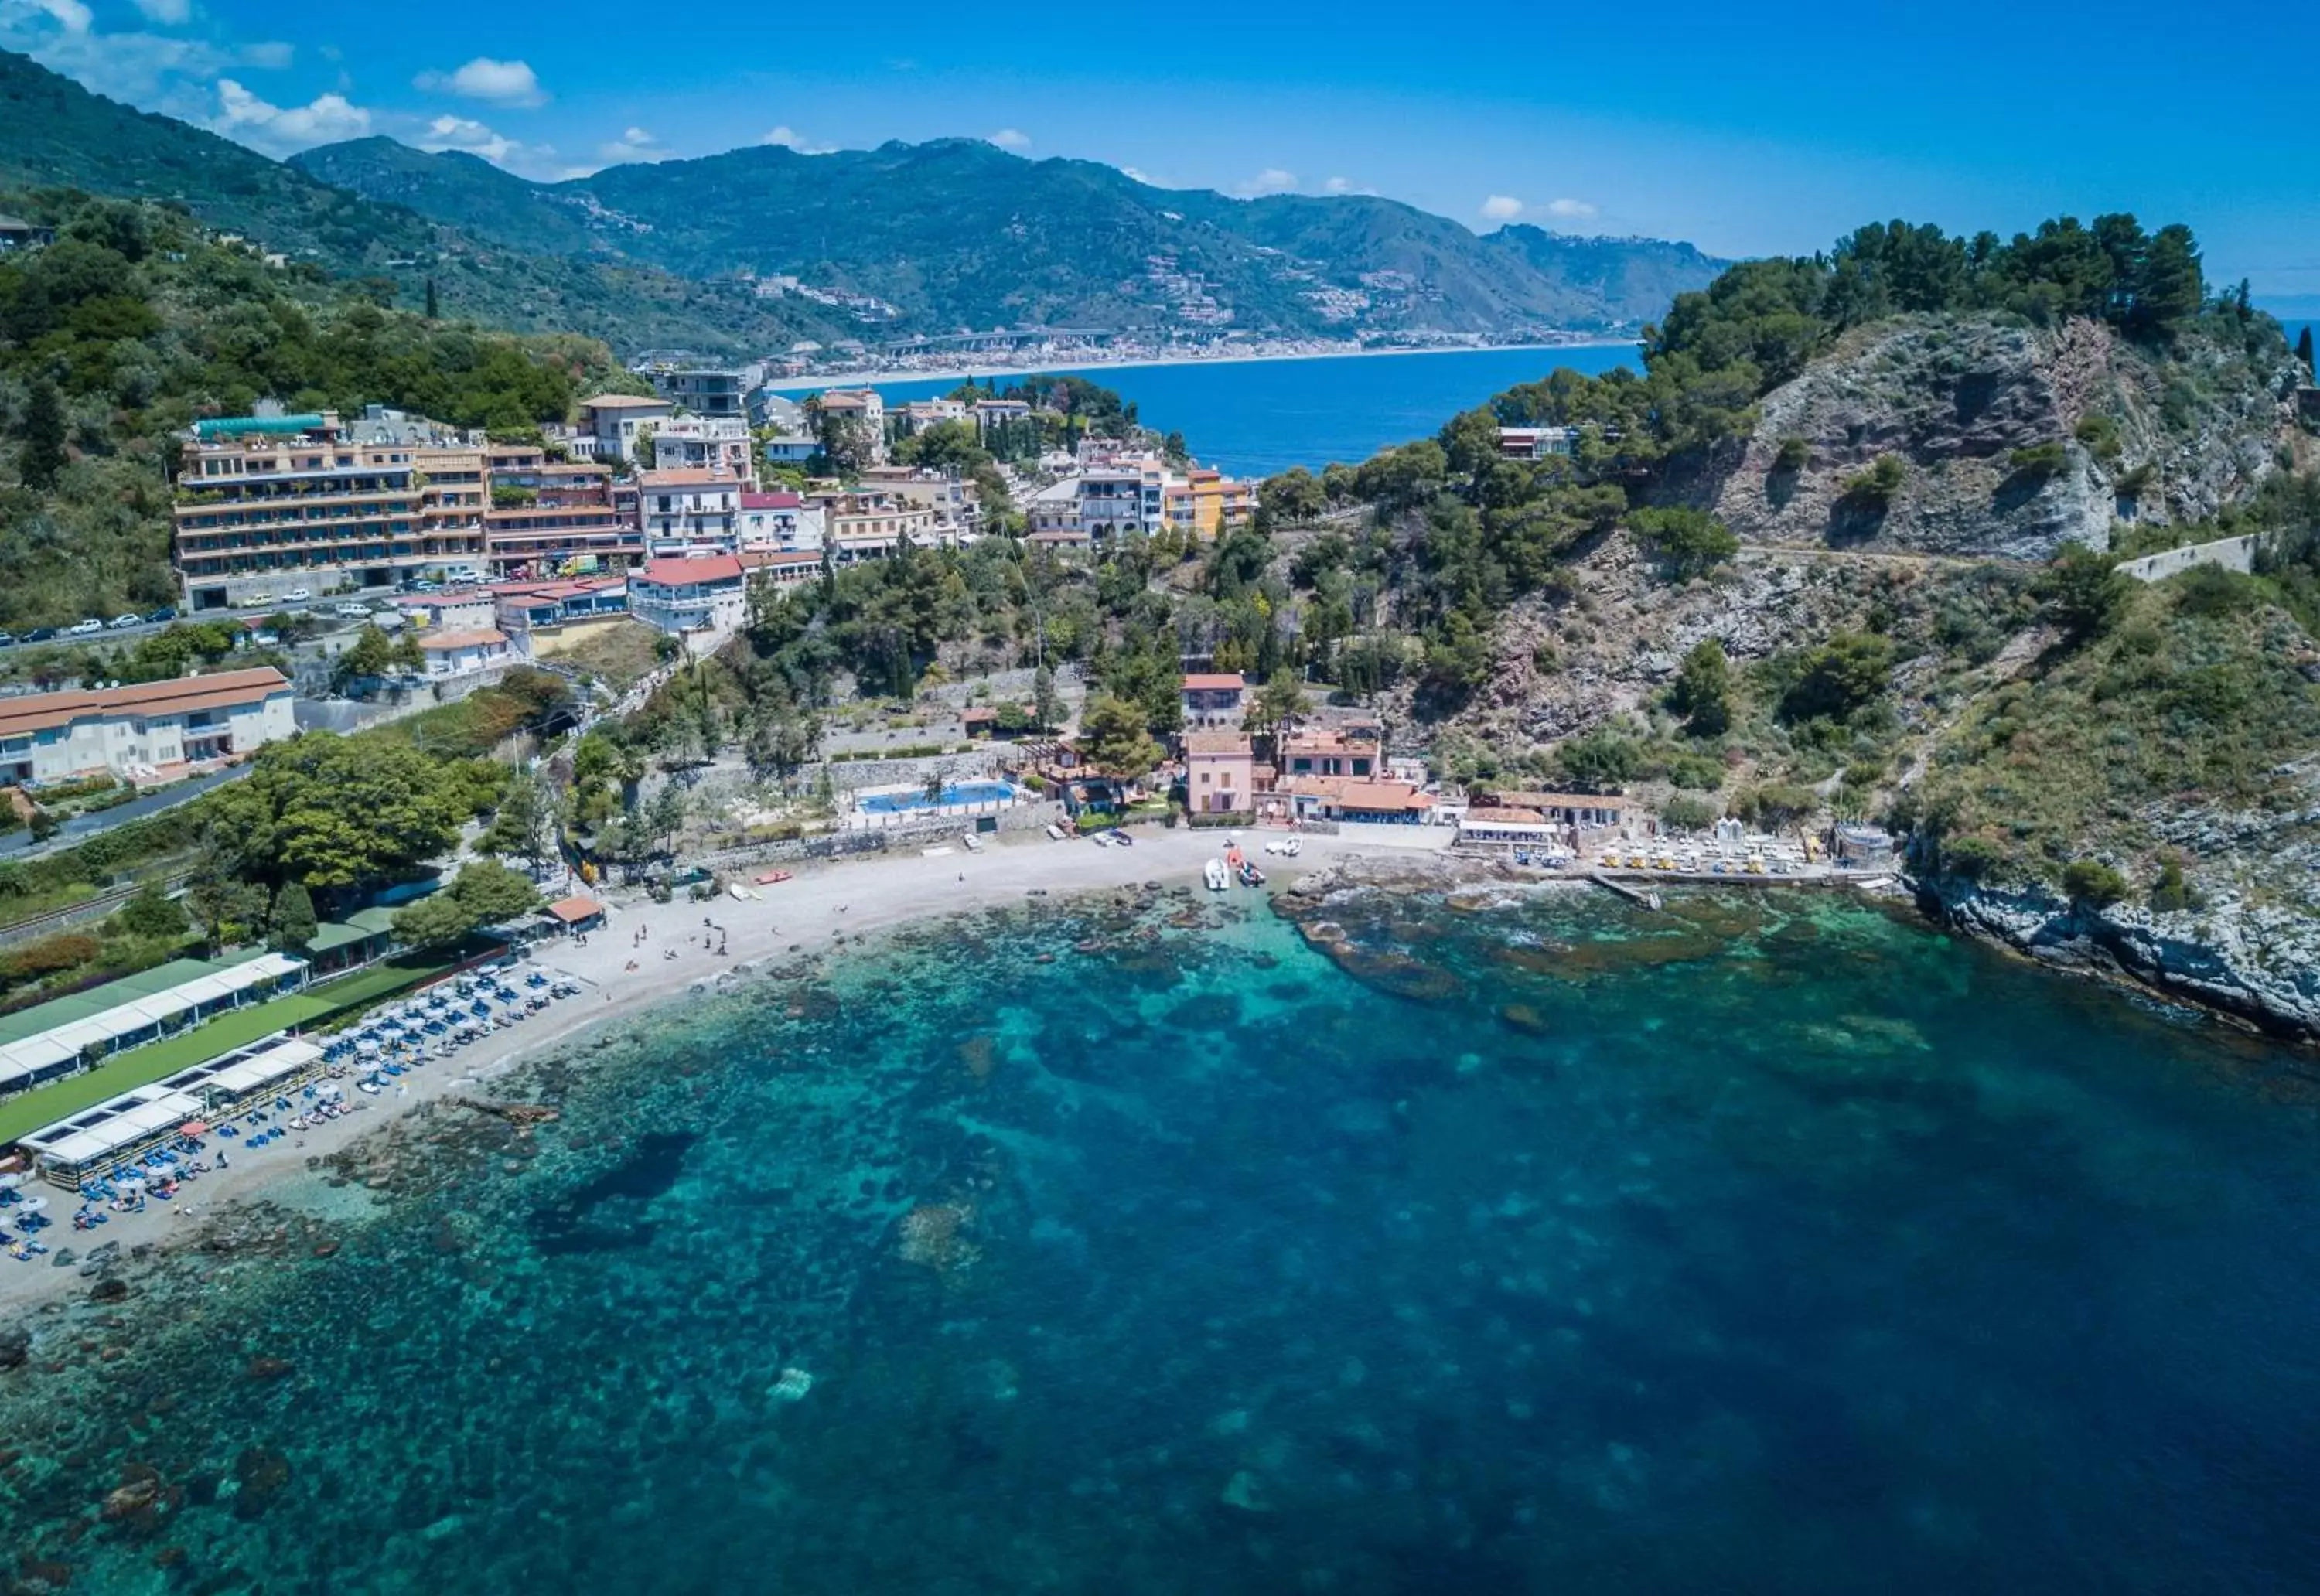 Day, Bird's-eye View in Taormina Panoramic Hotel